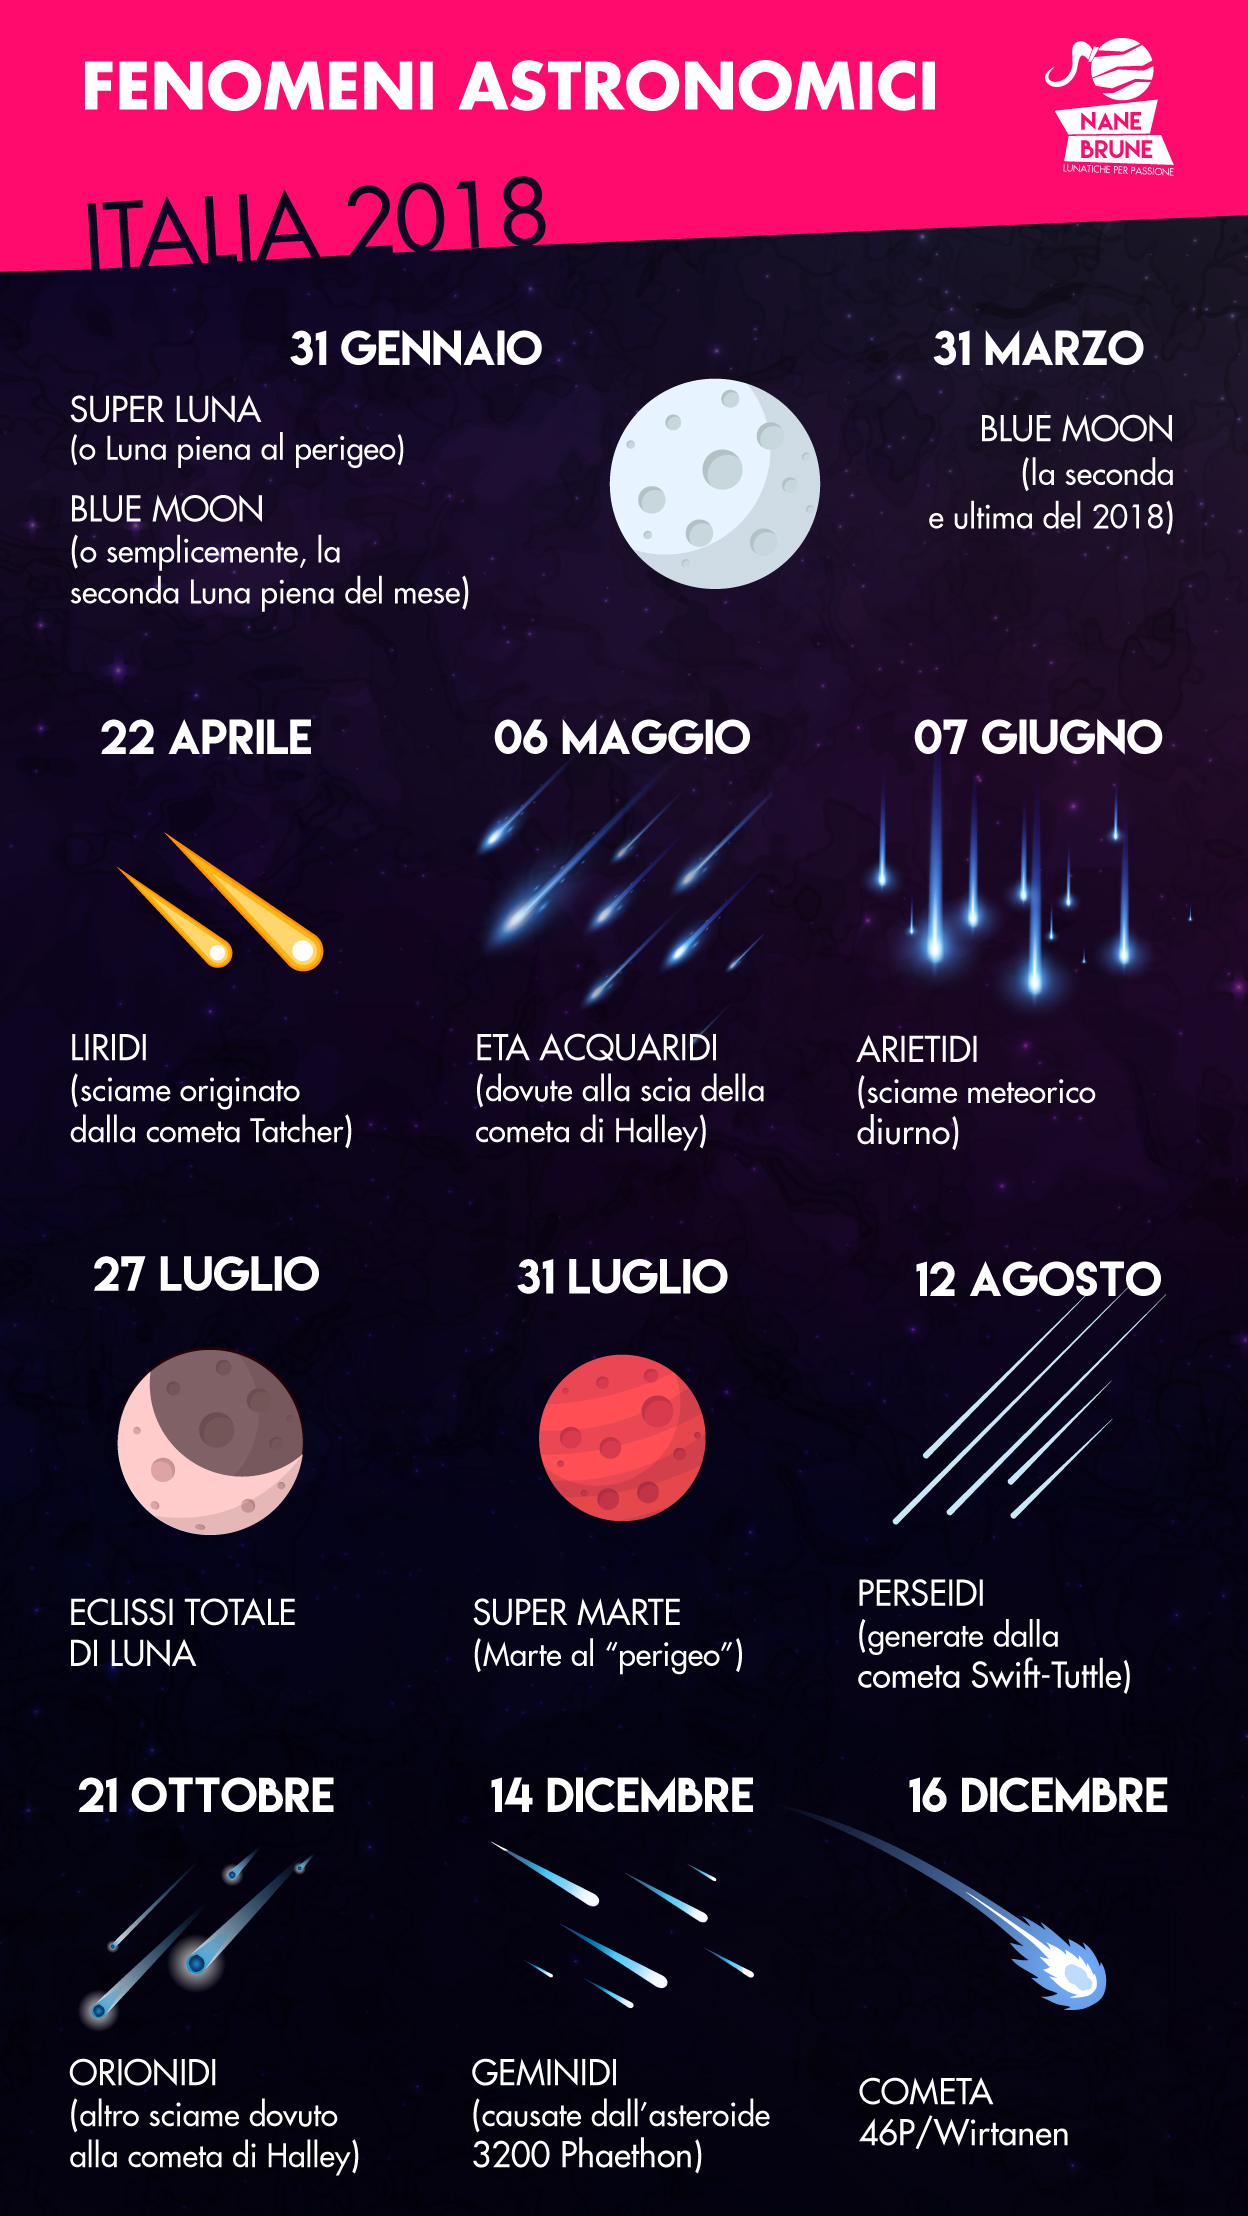 Fenomeni astronomici 2018 in Italia